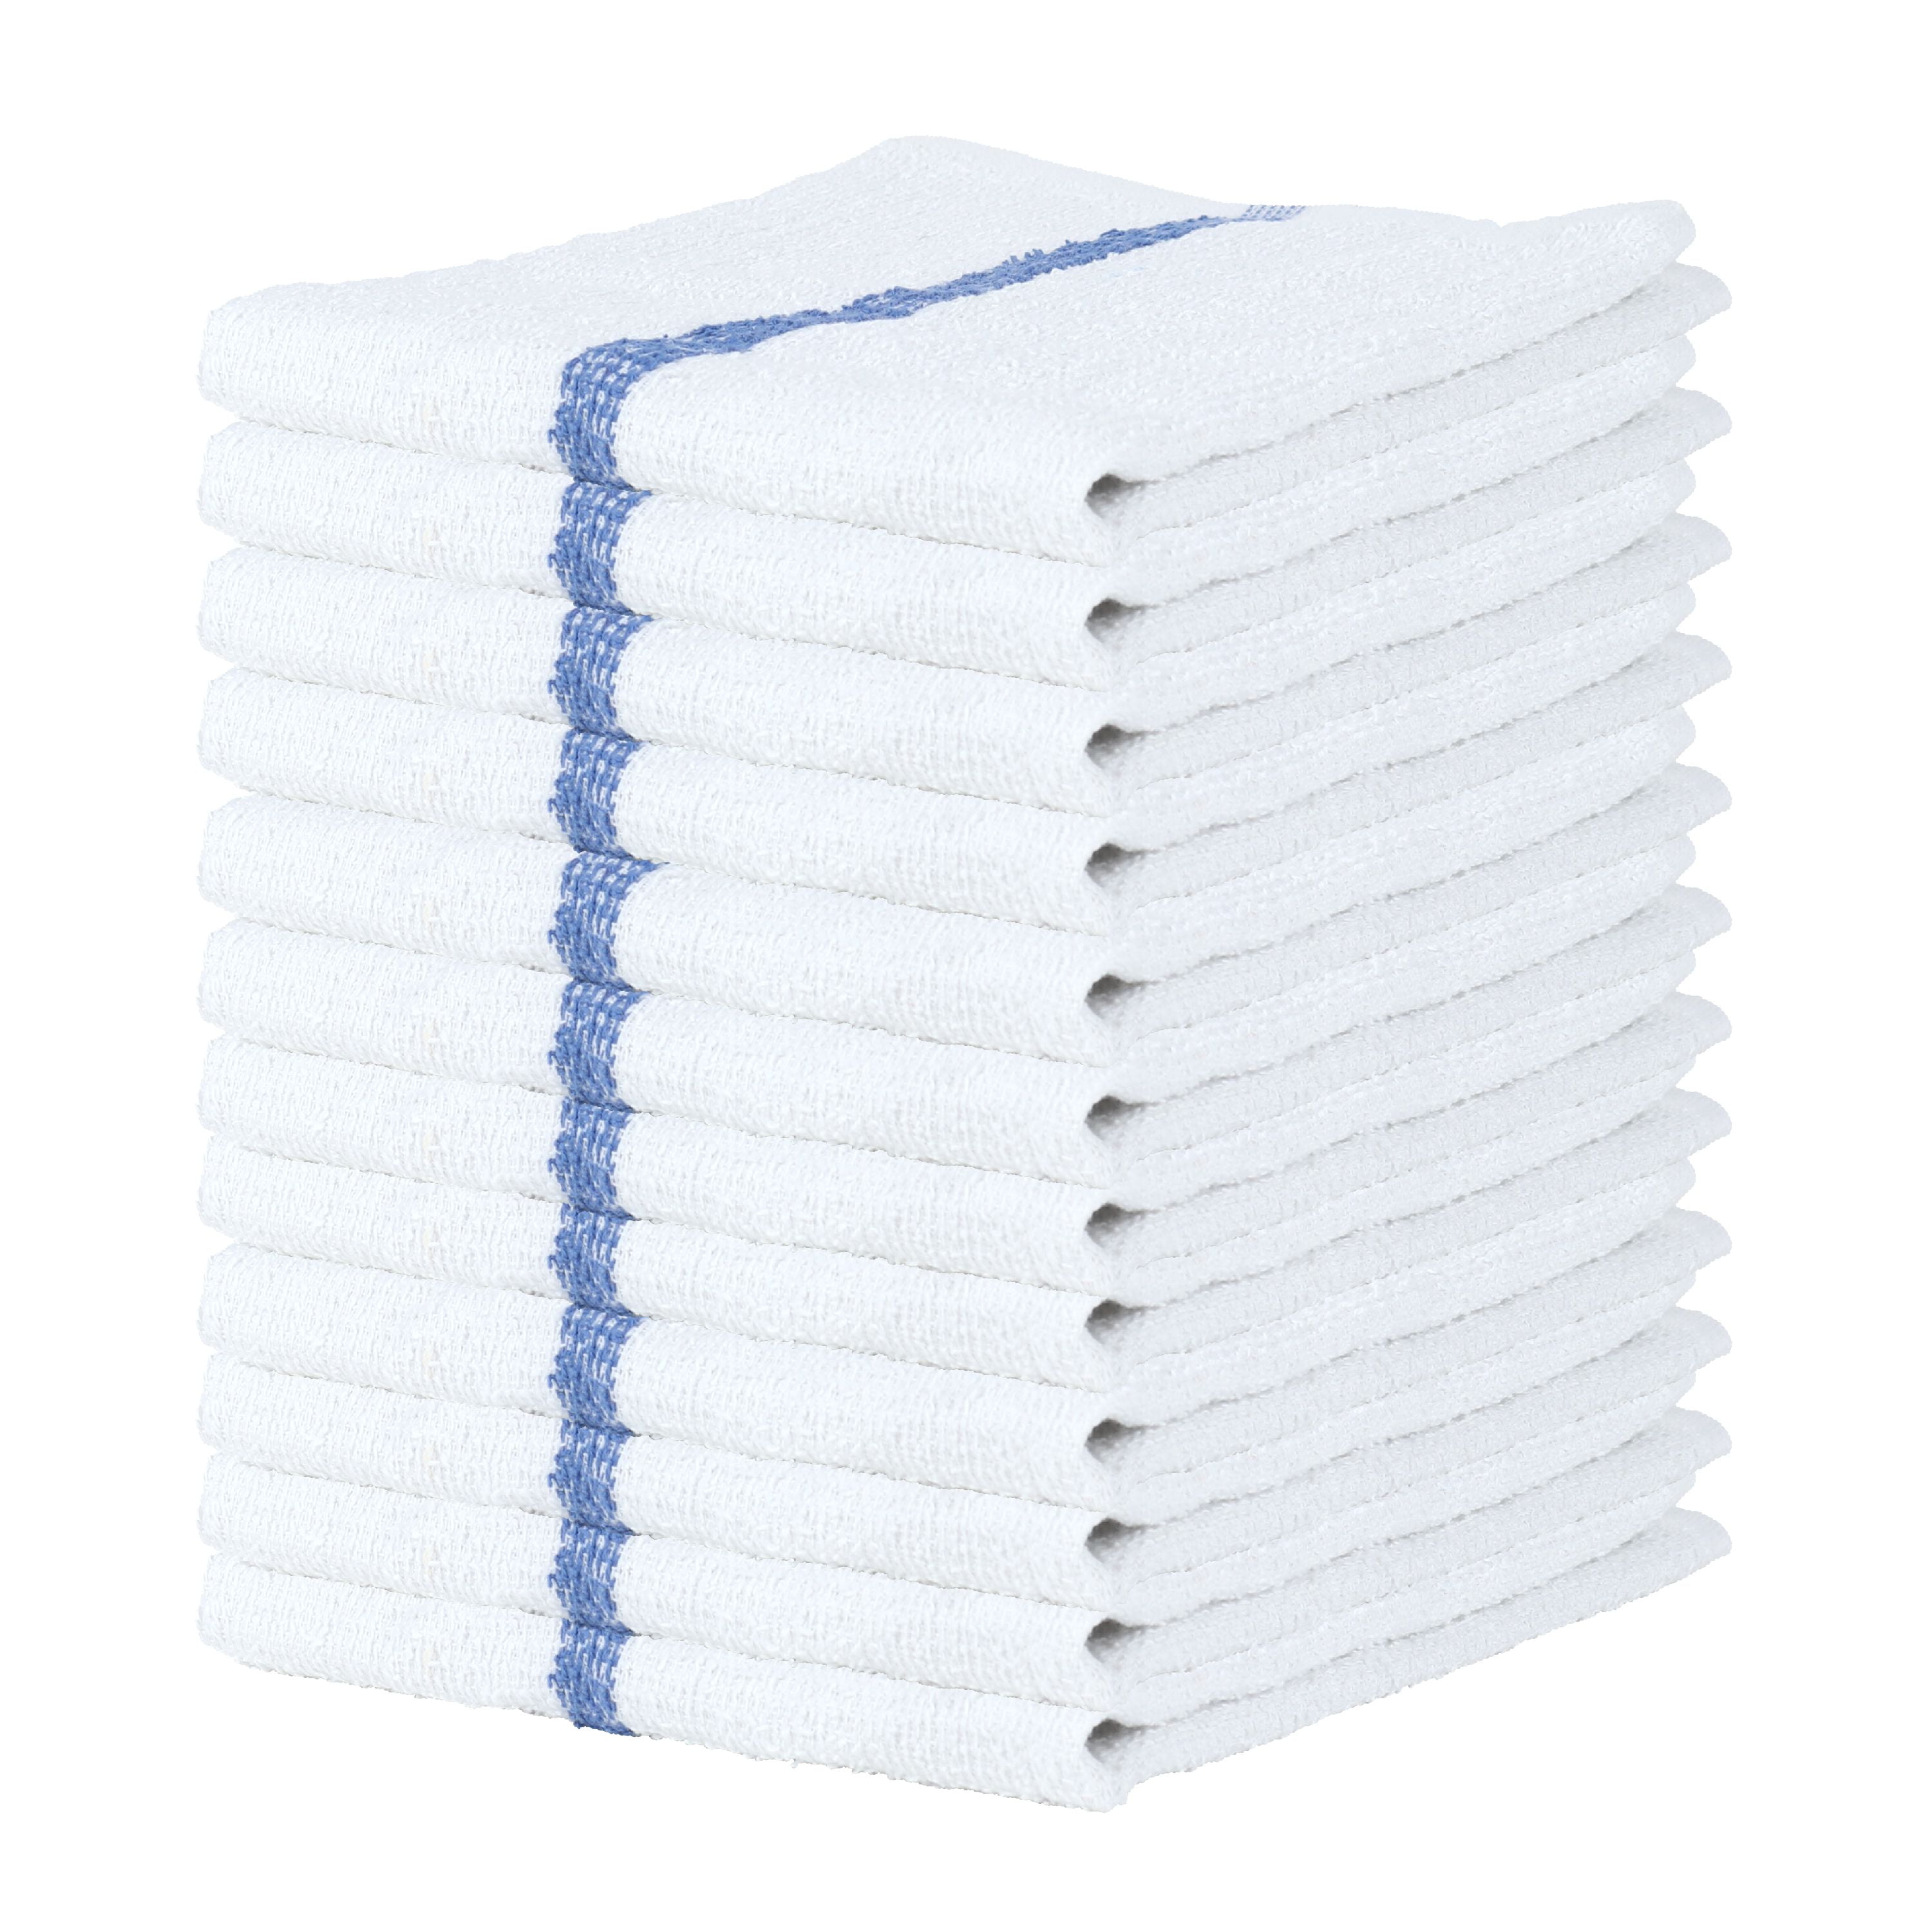 60 5 dozen new green striped bar towels bar mops cotton super absorbent 16x19 